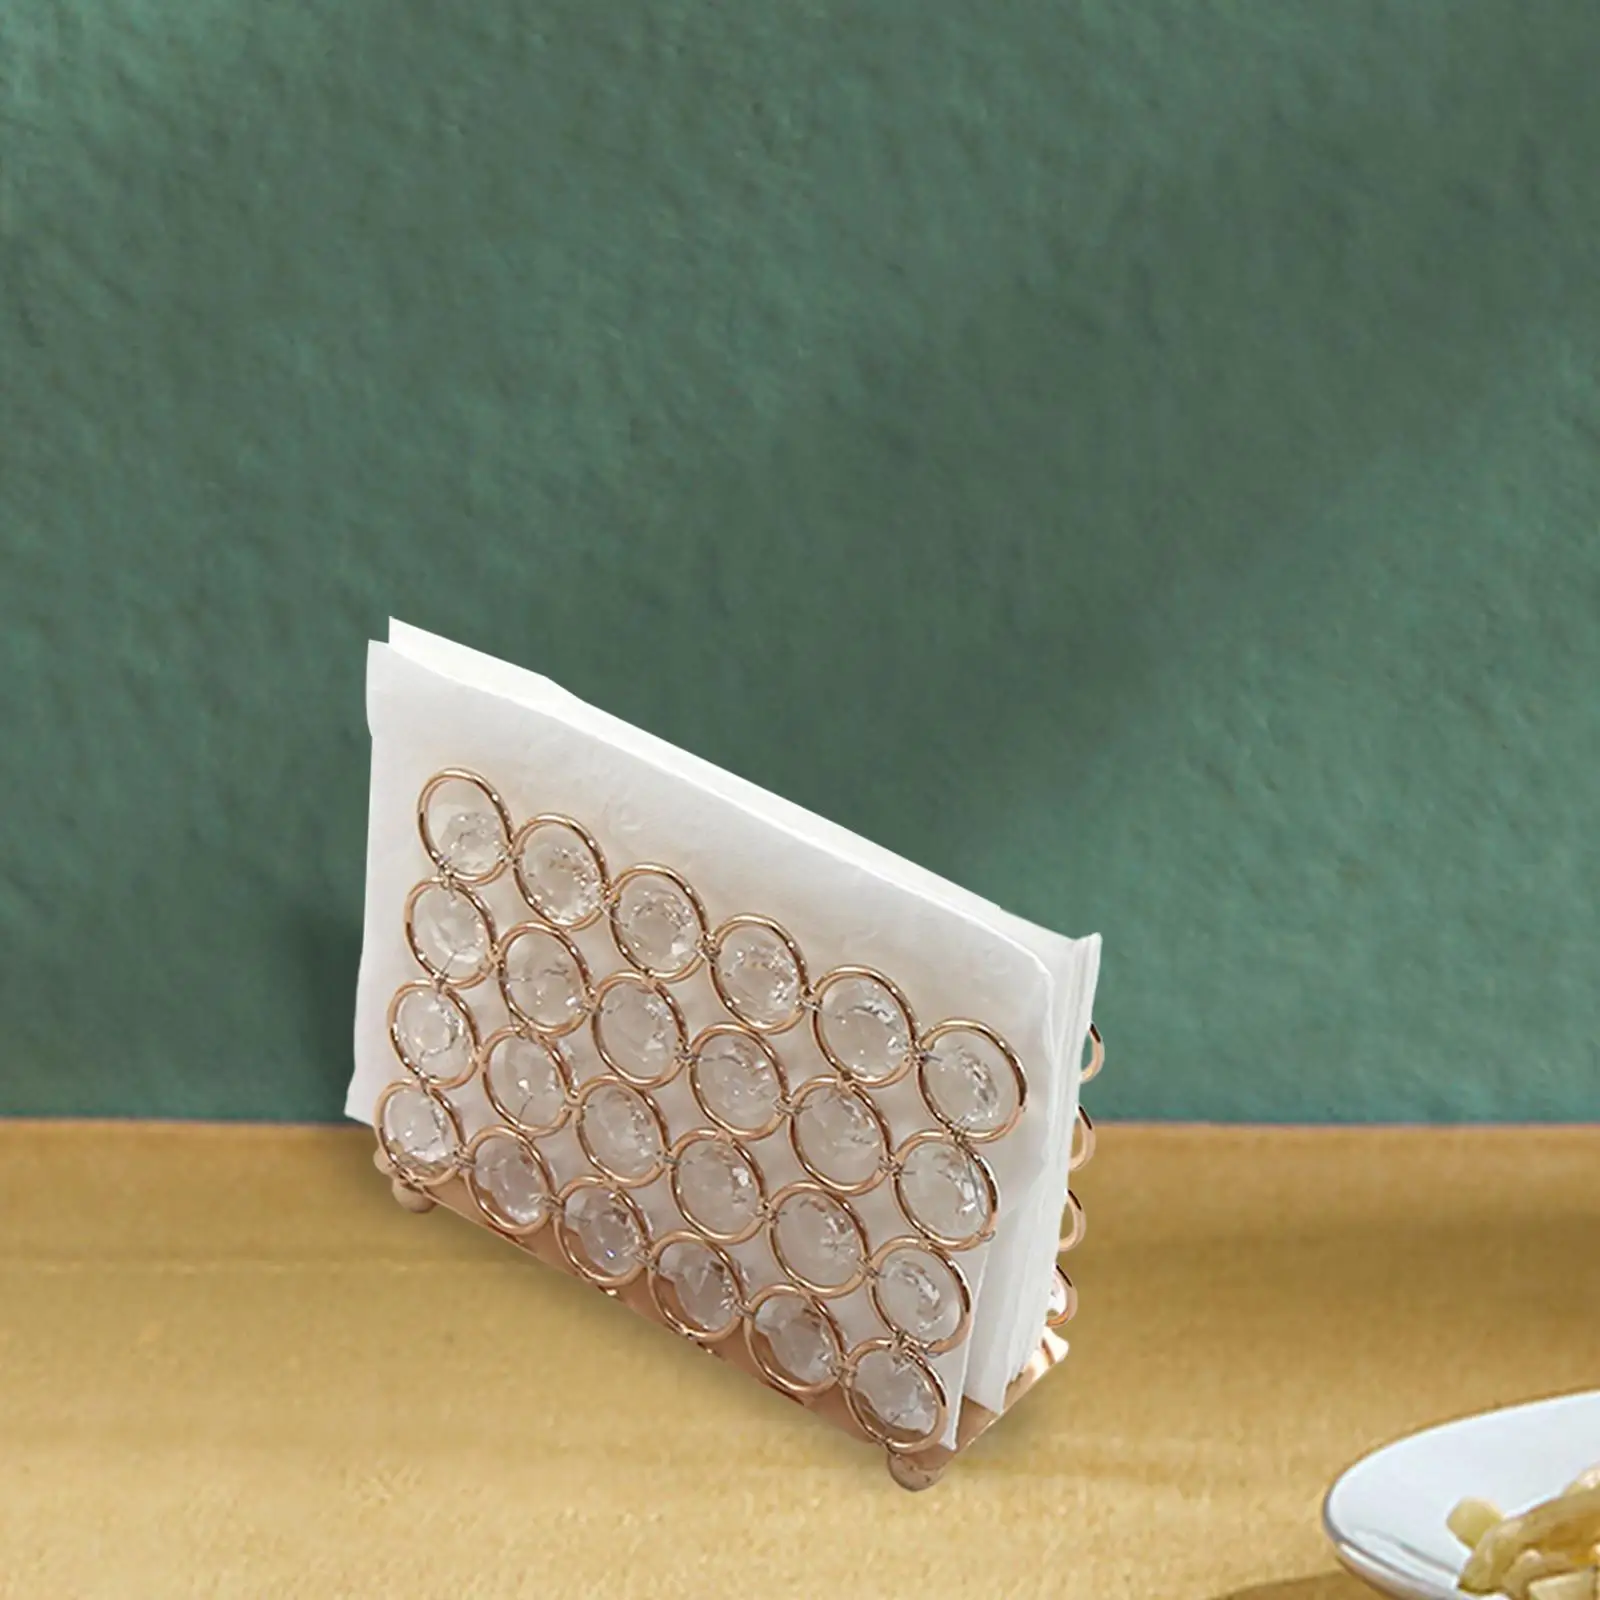 Crystal Napkin Holder, Serviette Holder Napkin Rack Tissue Dispenser for Restaurant Banquet